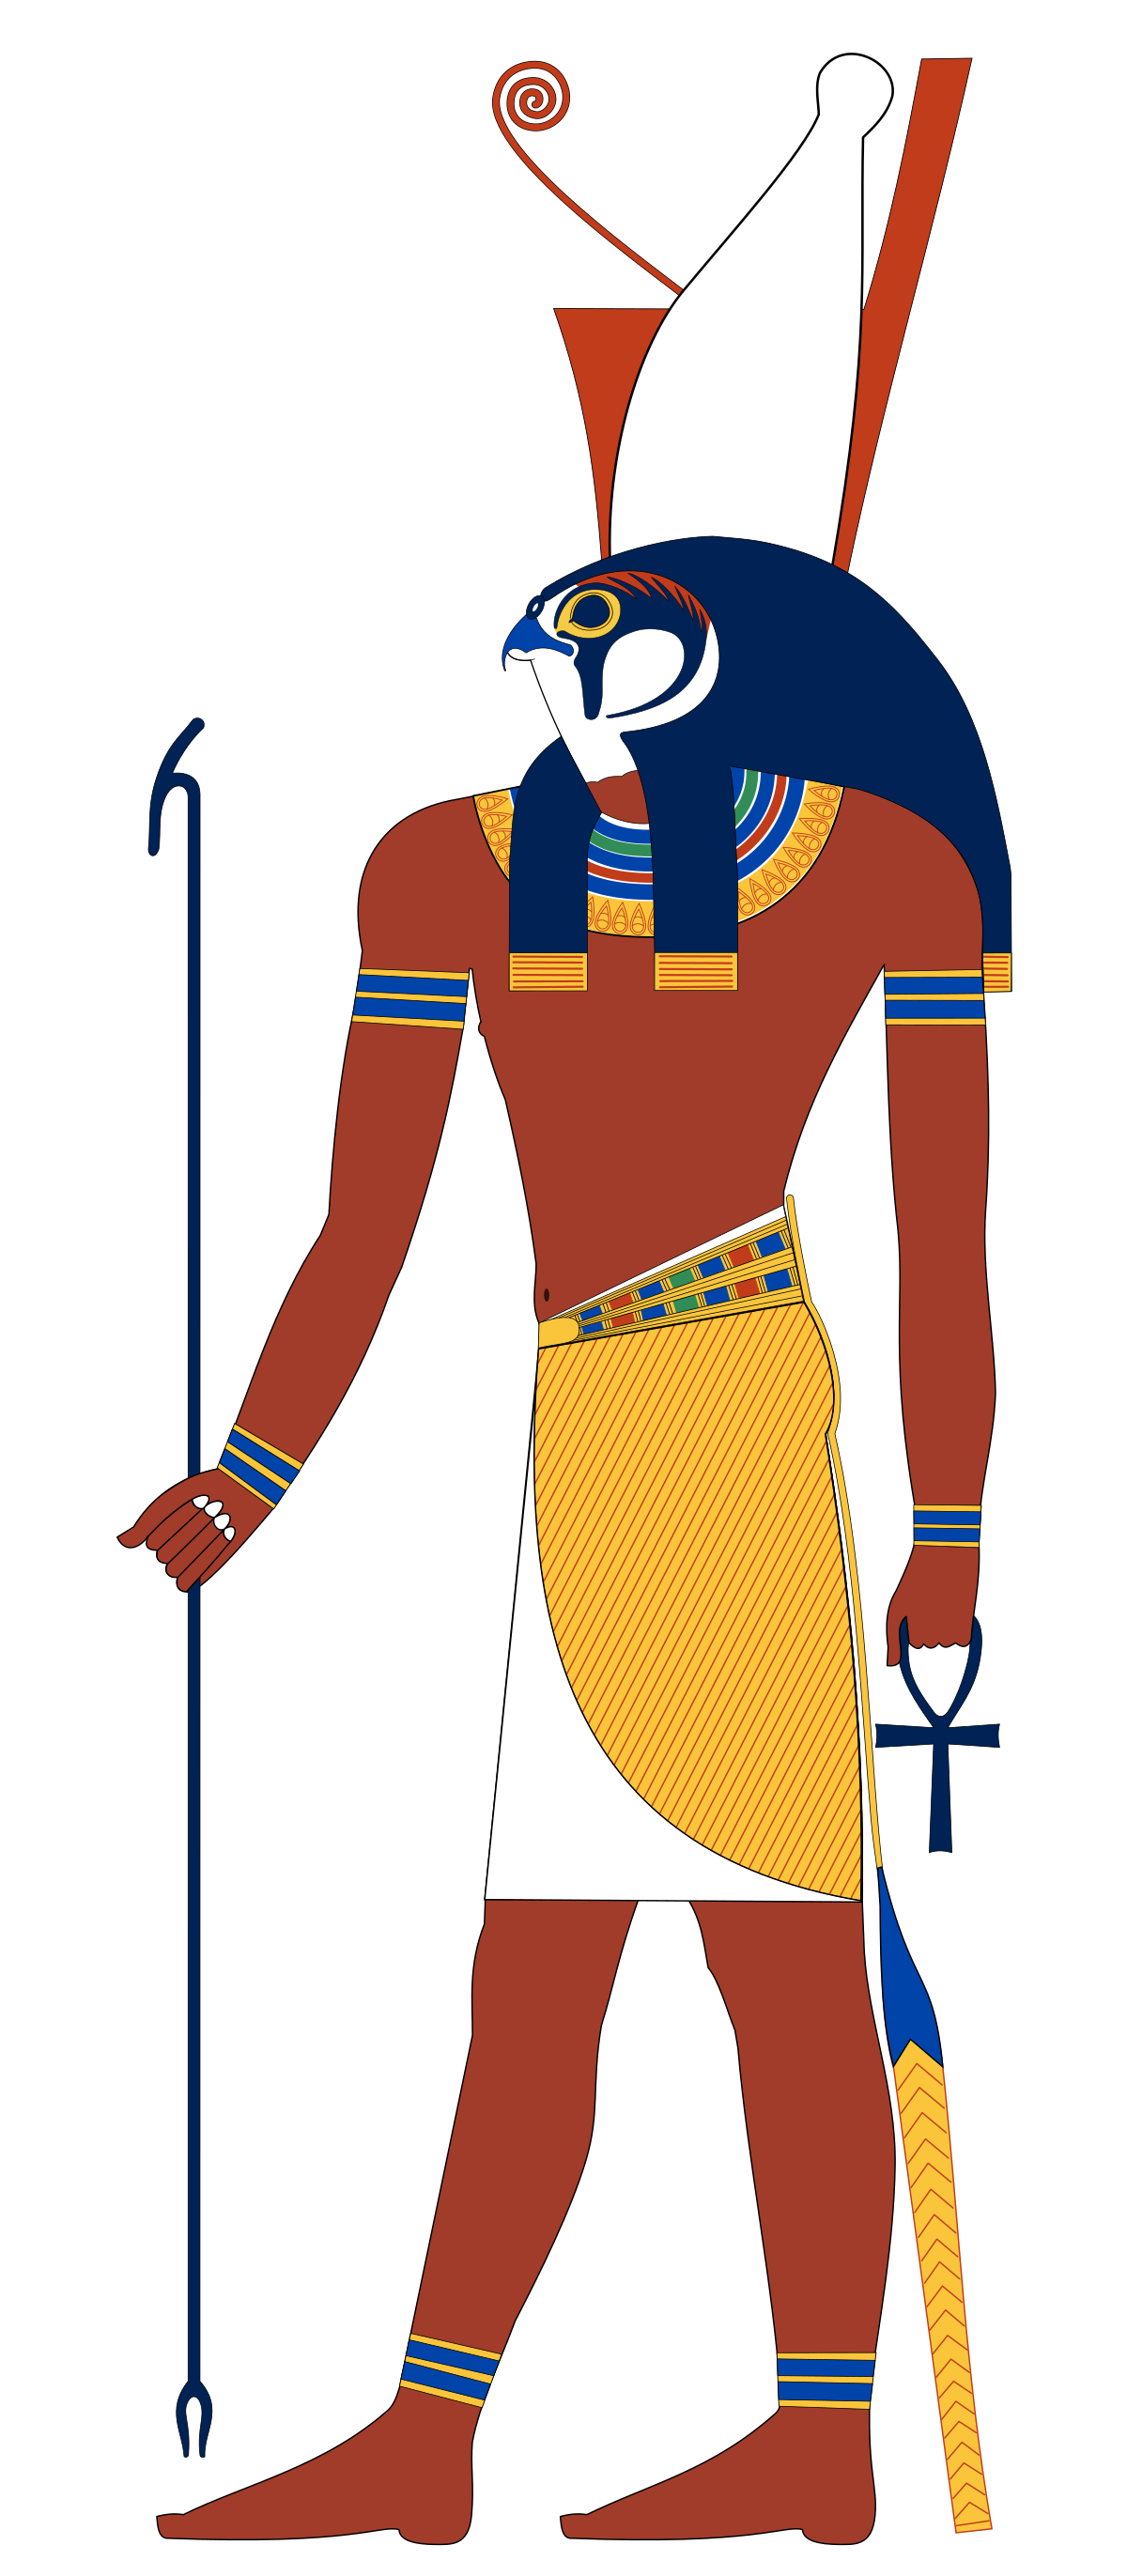 Những vị thần Ai Cập đại diện cho sức mạnh, sự bảo vệ và trí tuệ. Họ là những điều tối cao mà con người luôn tự hỏi về. Hãy khám phá những câu chuyện về các vị thần và những nơi thờ cúng của họ để hiểu hơn về lịch sử và văn hoá của đất nước Ai Cập.